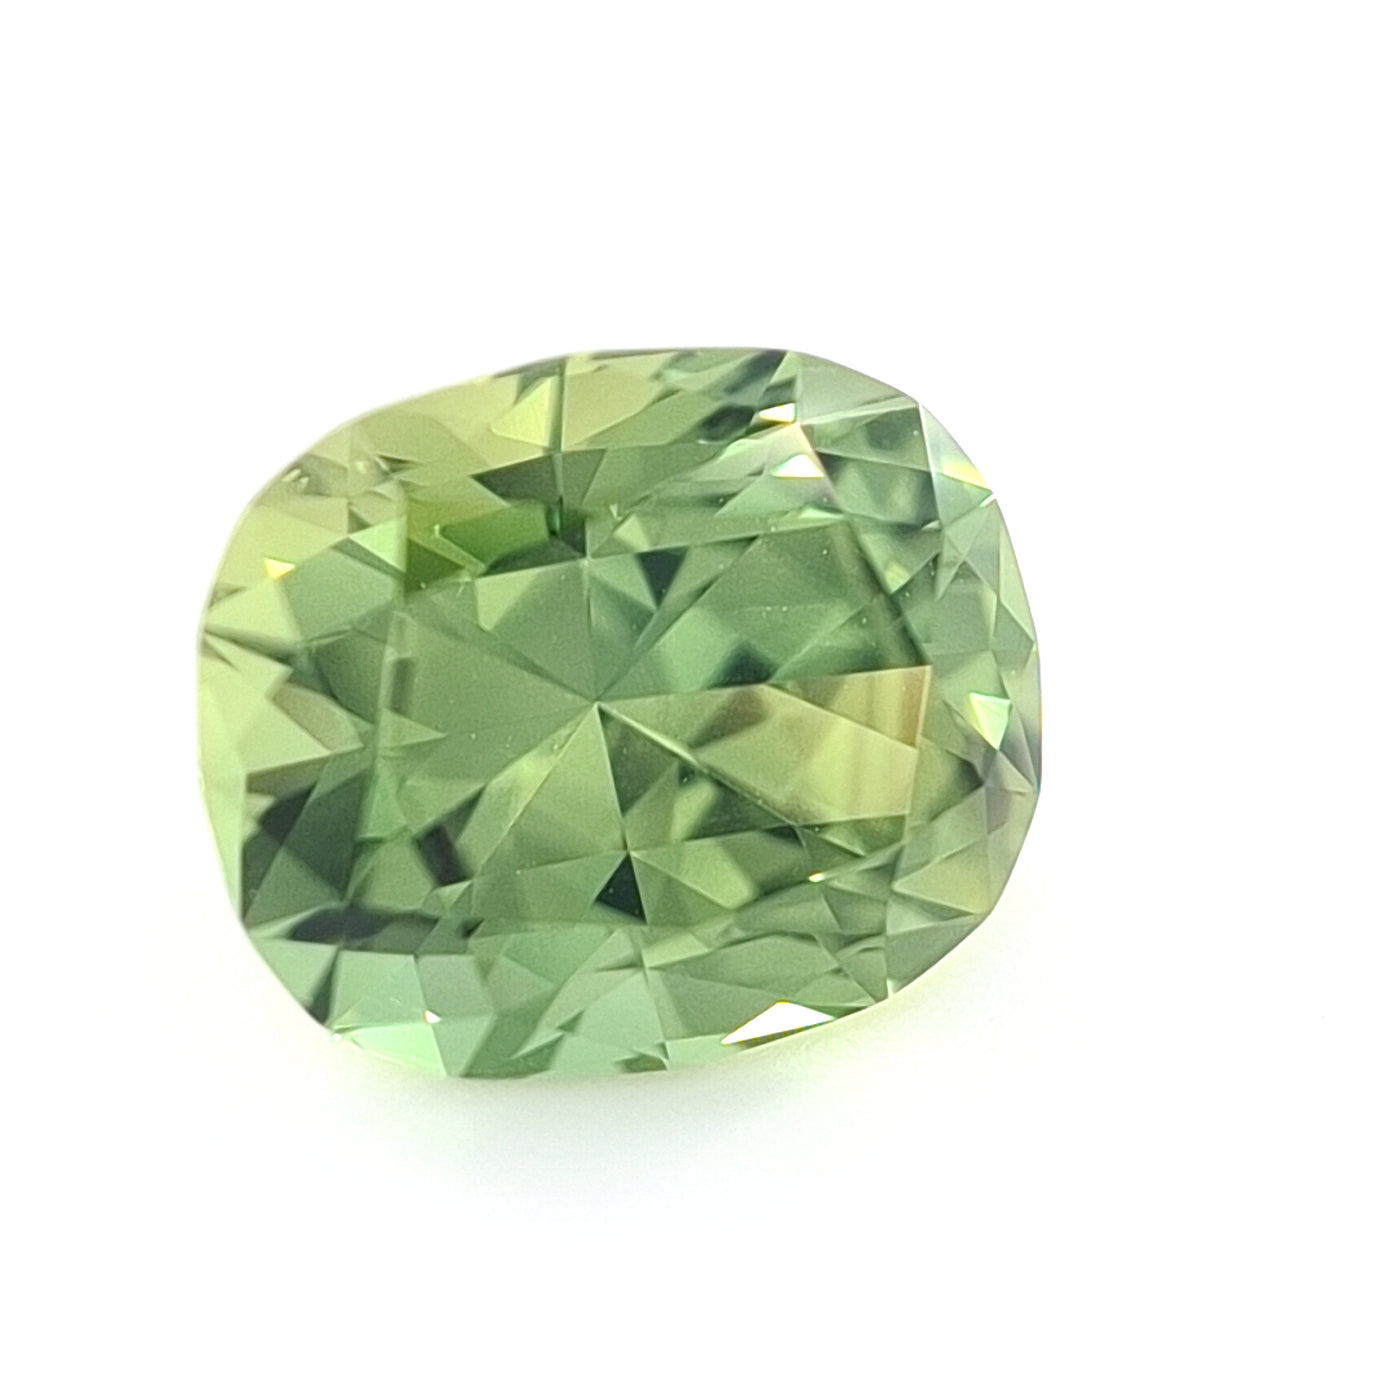 2.68ct Australian Sapphire, Green - Cushion